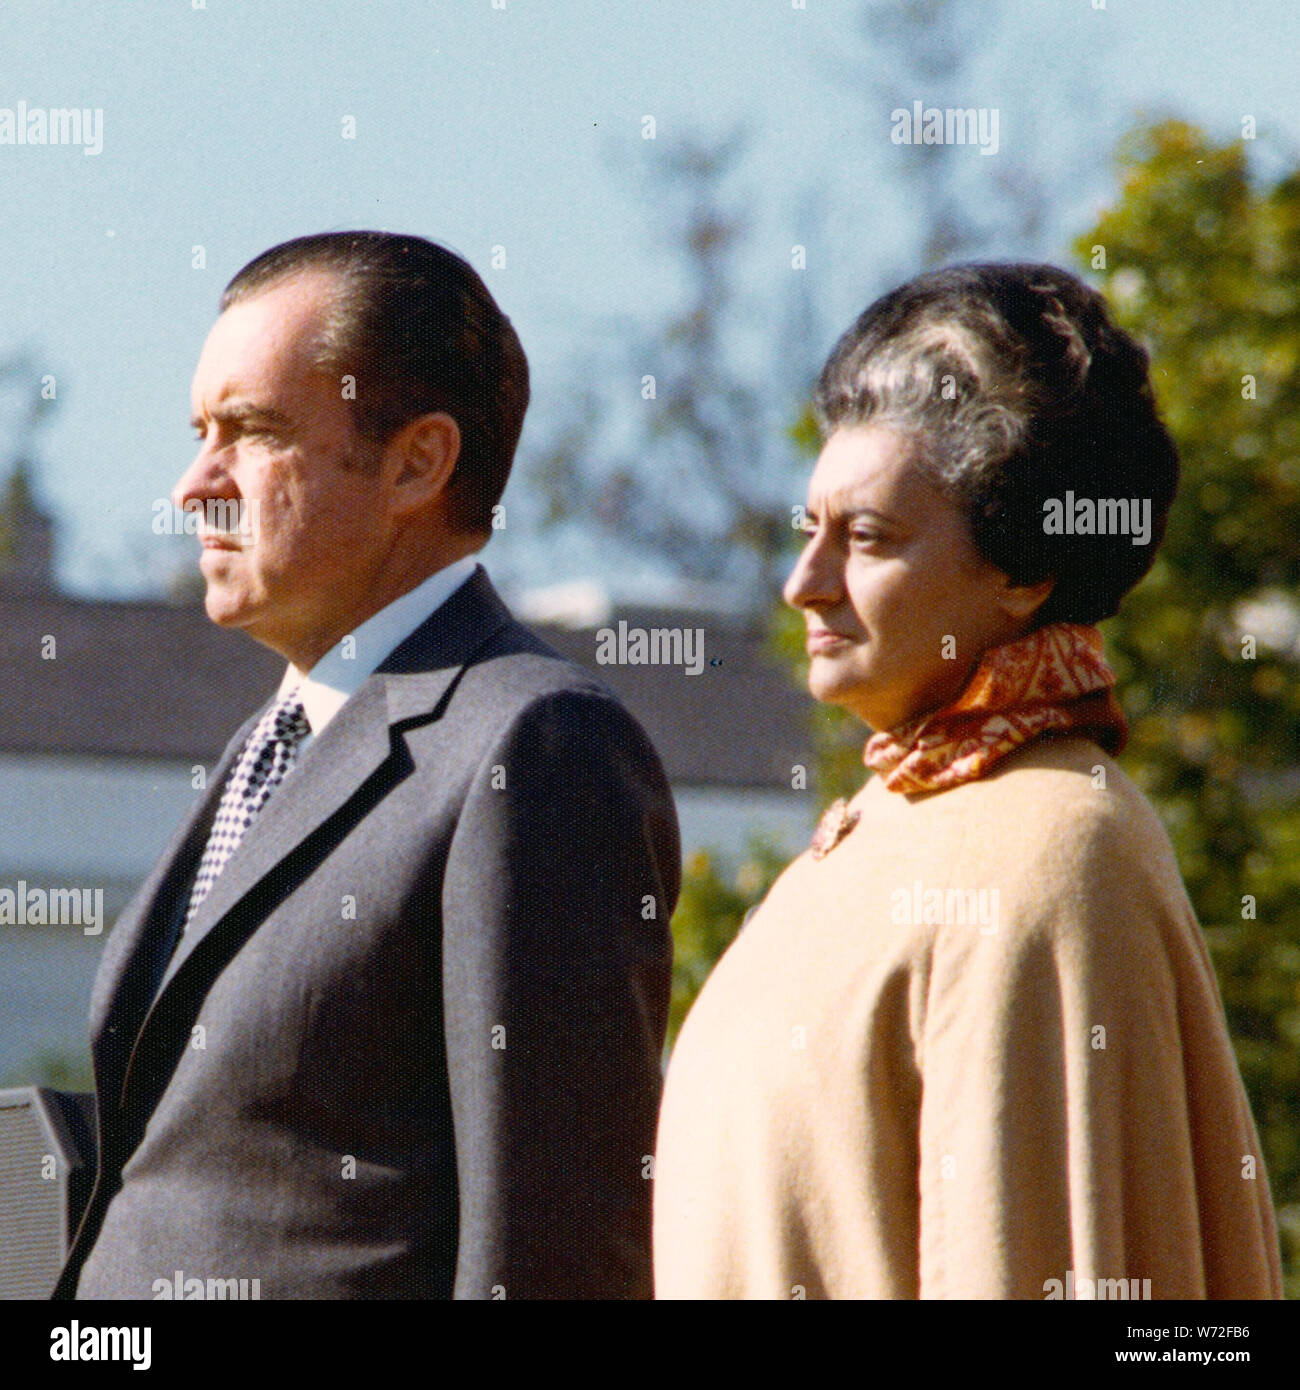 Begrüßungszeremonie für Premierministerin Indira Gandhi; Umfang und Inhalt: Im Bild: Premierminister Gandhi, Präsident Nixon. Betrifft: Staatsoberhaupt - Indien. Stockfoto